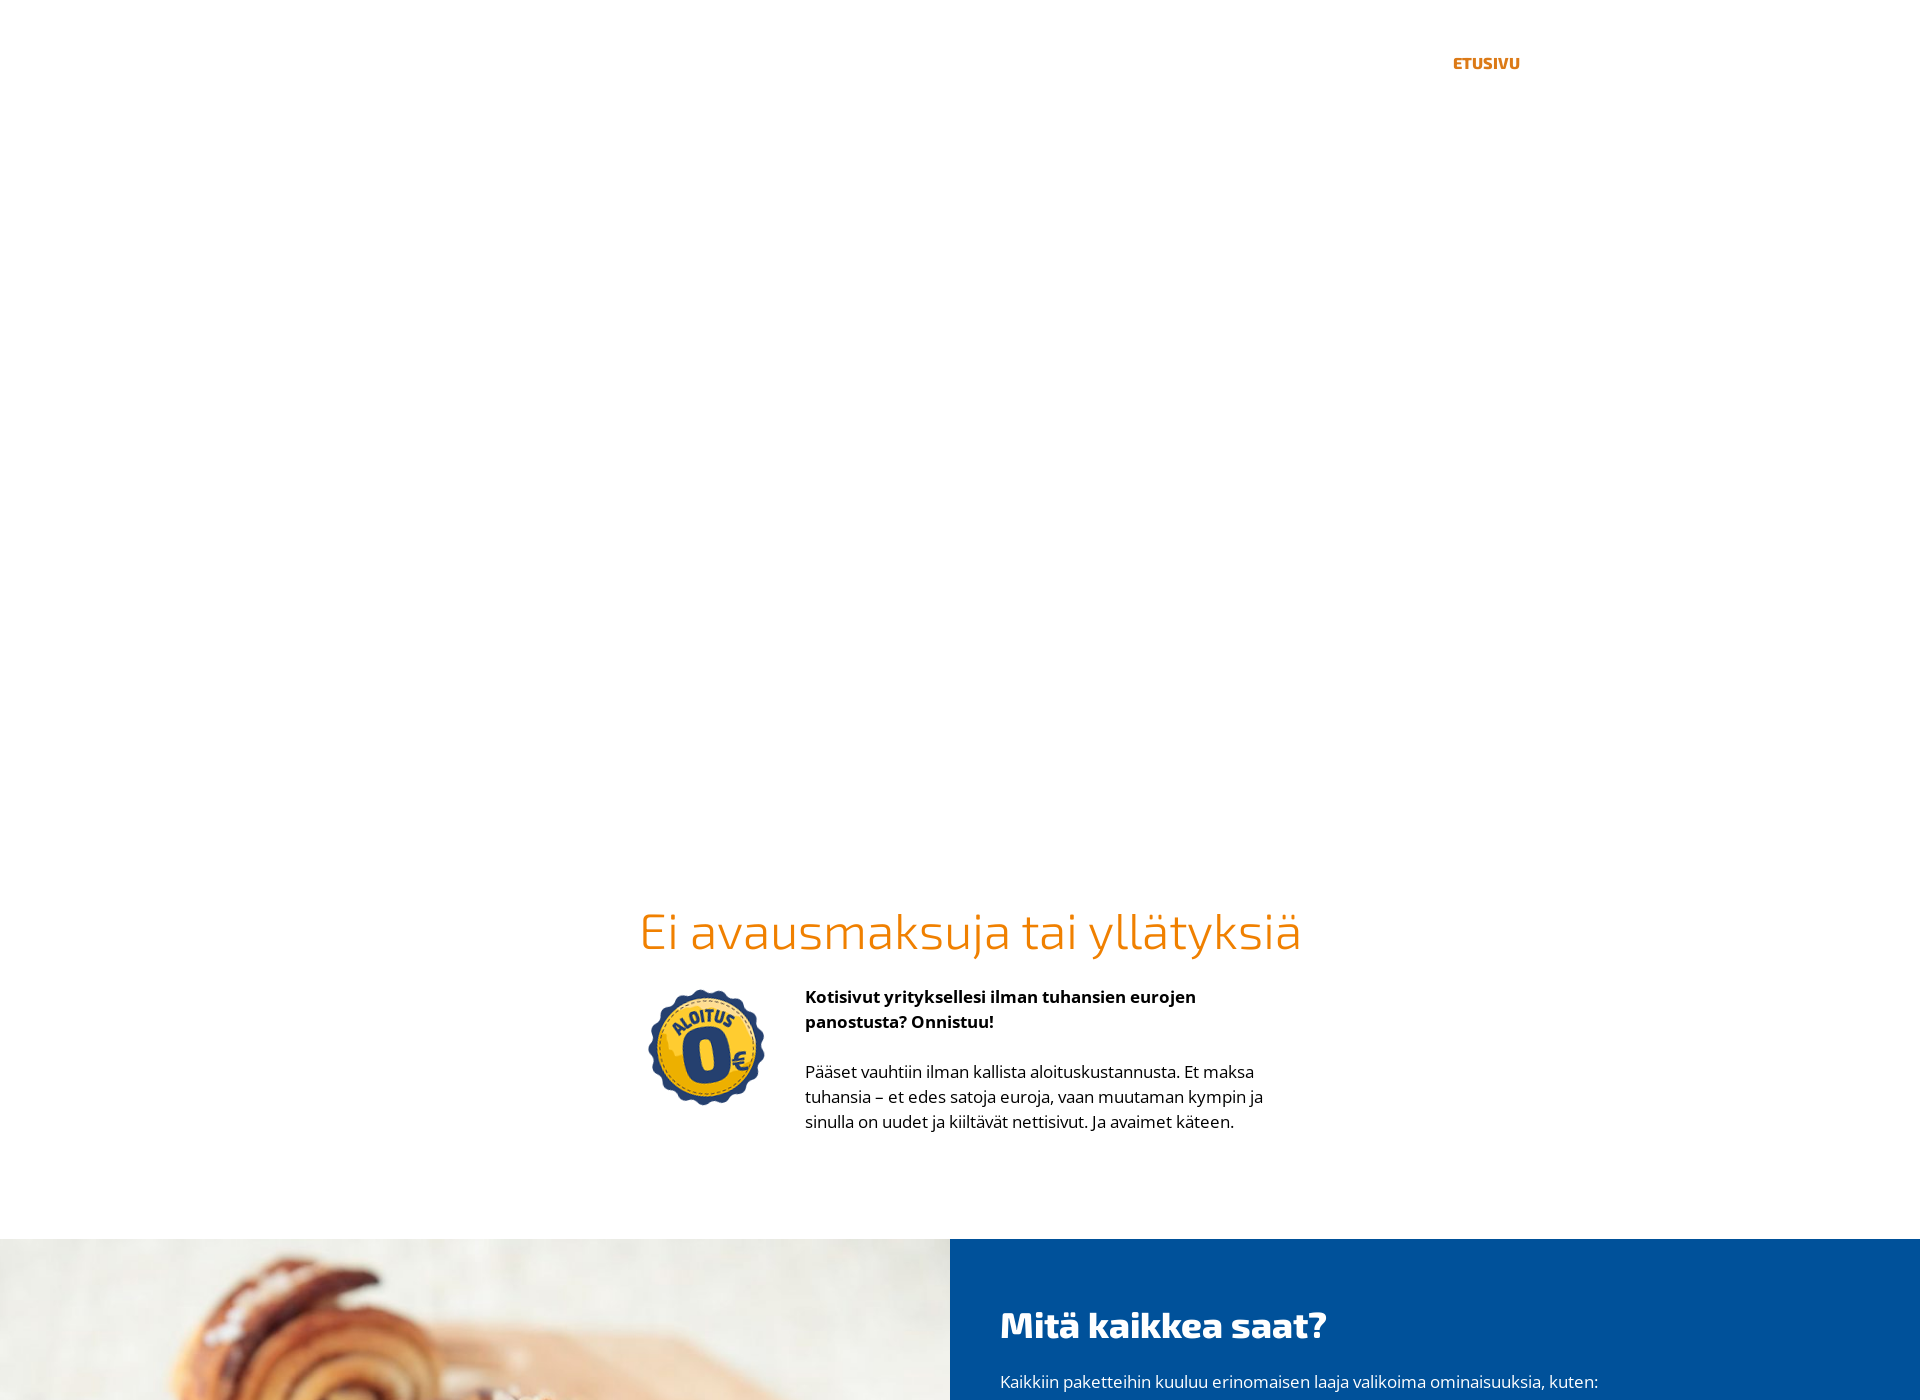 Screenshot for sivutyritykselle.fi